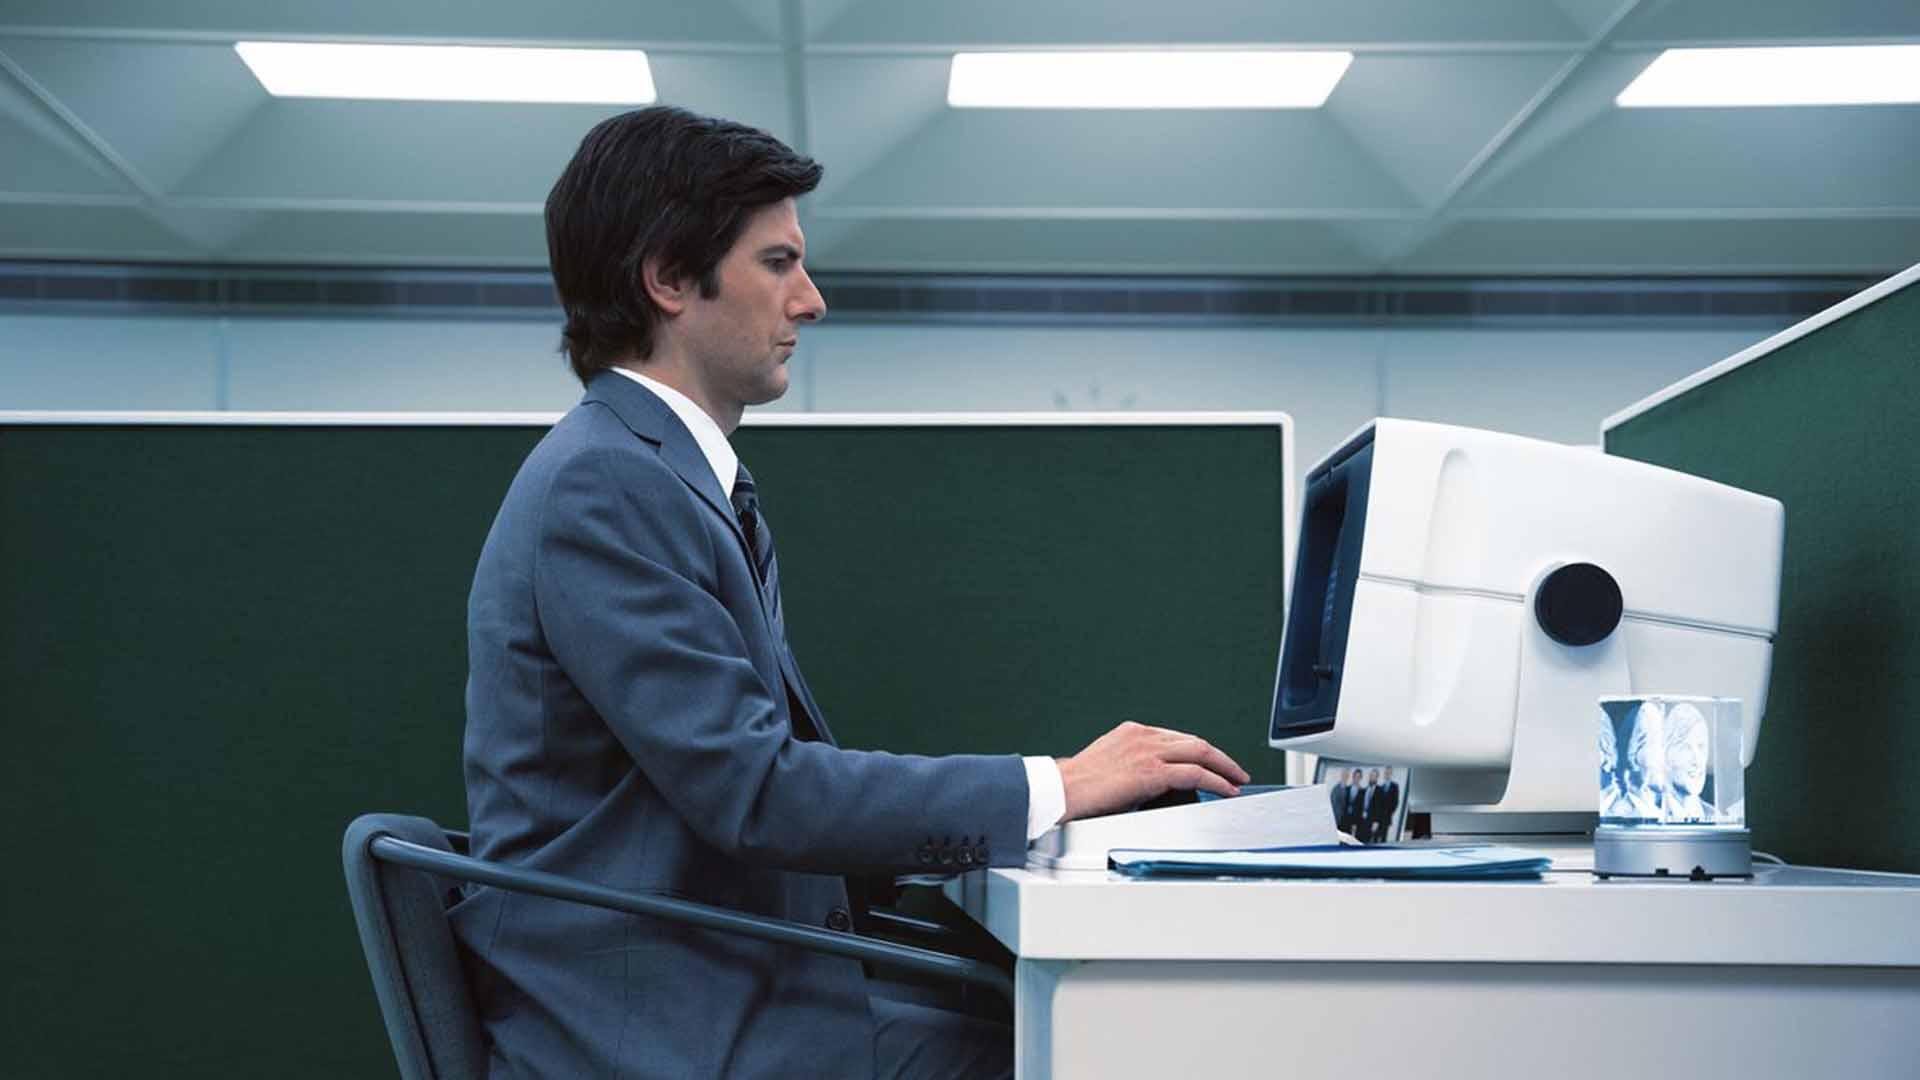 آدام اسکات روی یک کامپیوتر شرکتی در Severance کار می کند